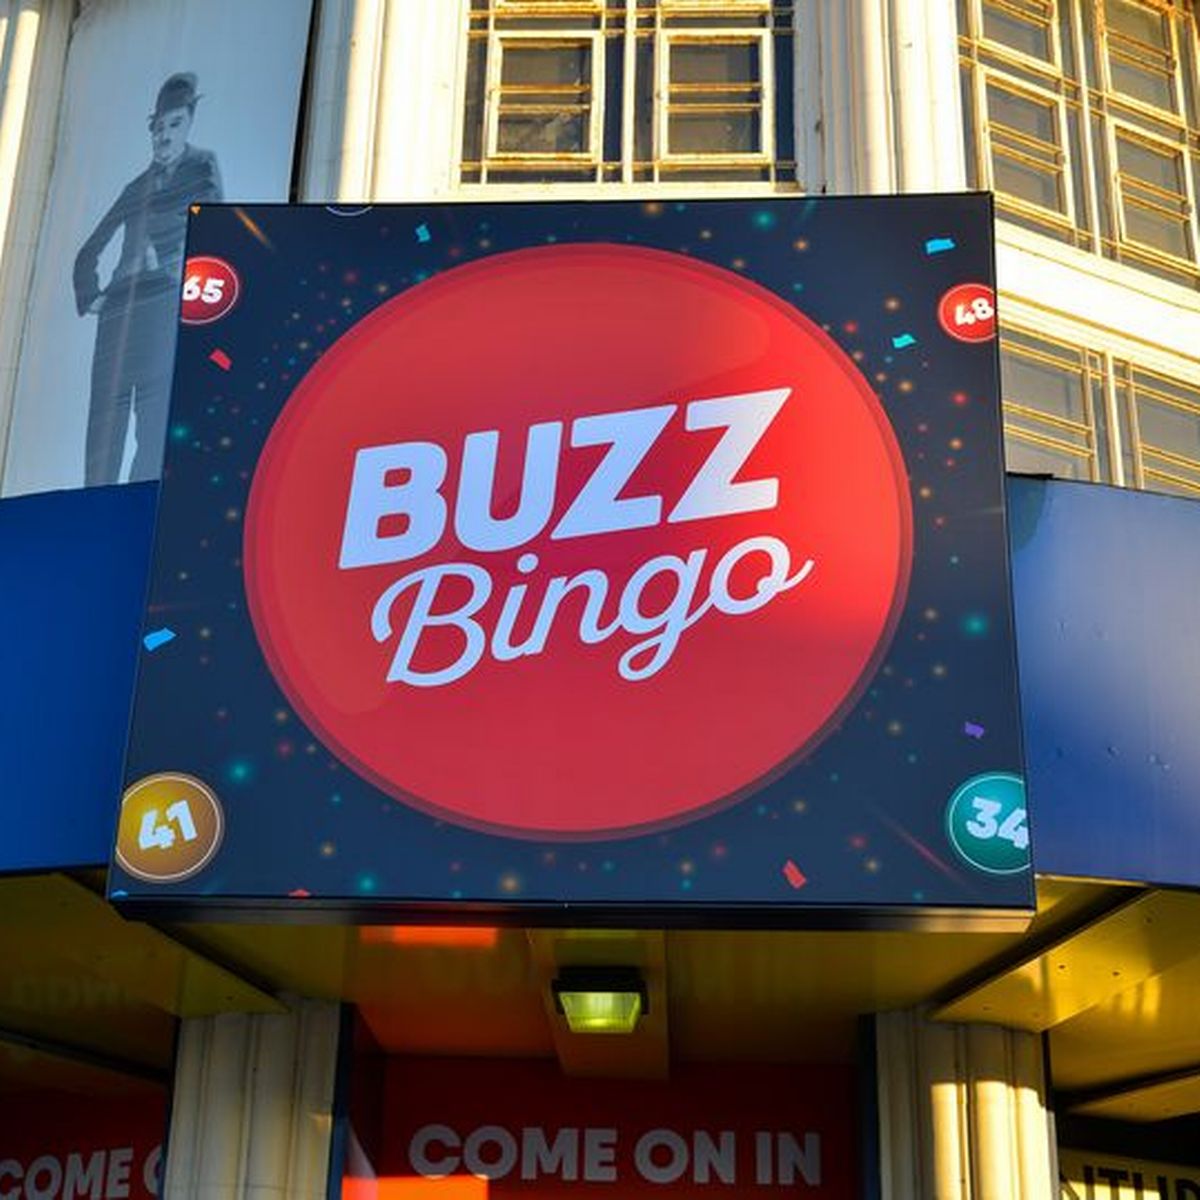 Buzz Bingo taps service of Rightlander